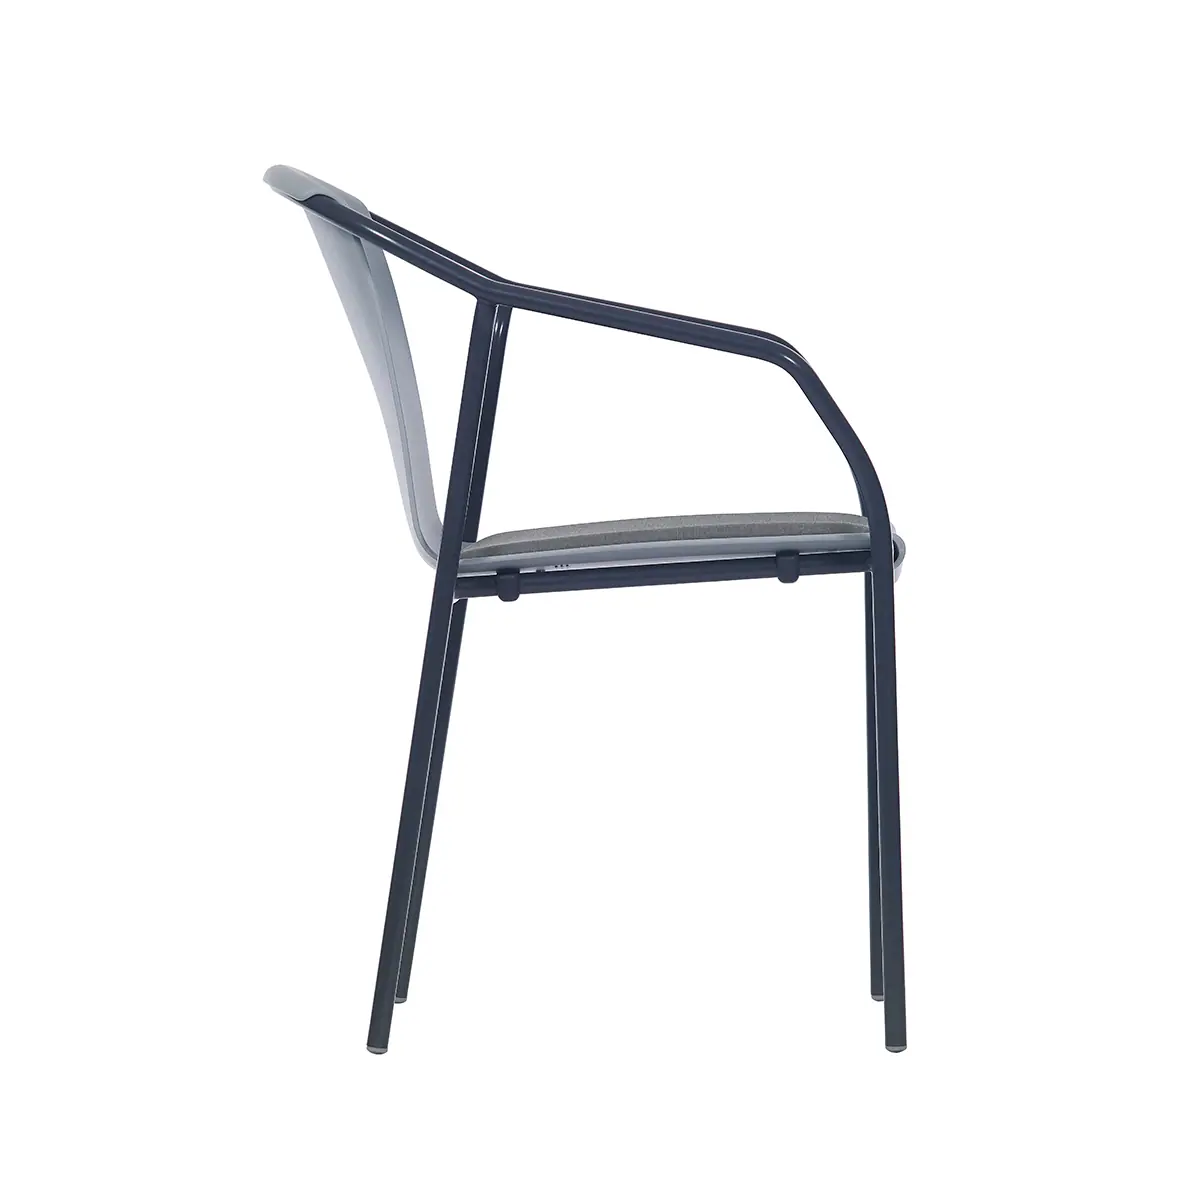 81519-81512-rod-pad-chair